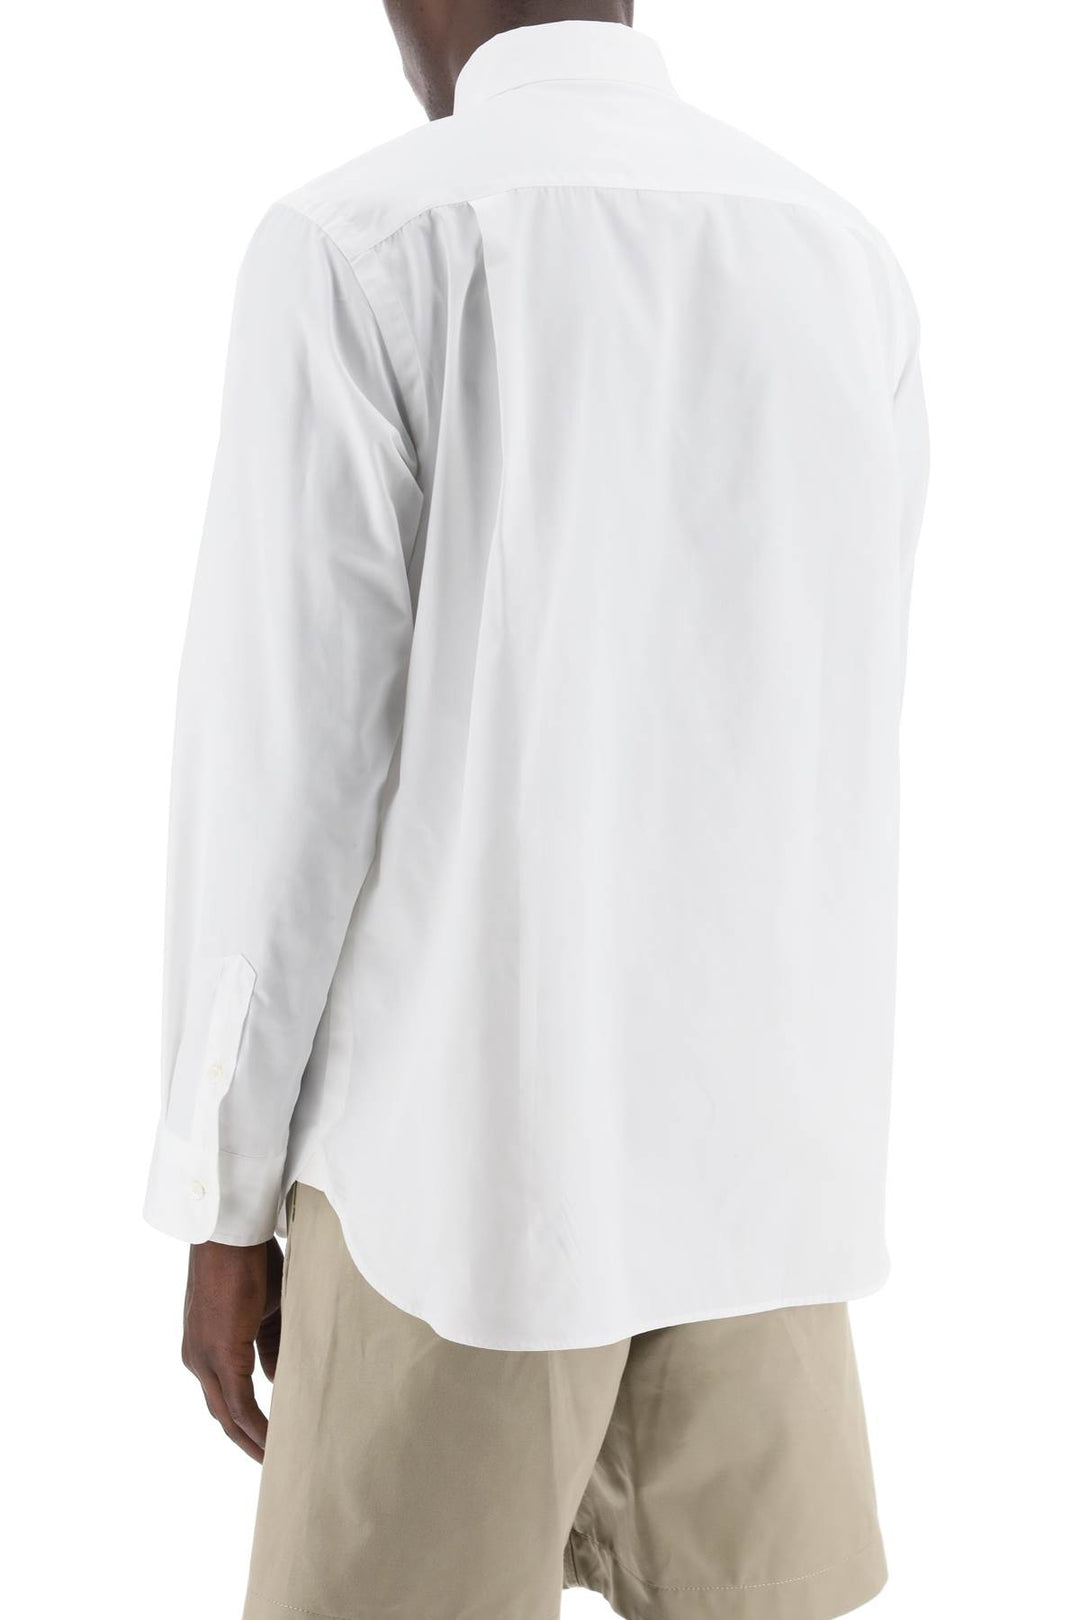 Sacai layered poplin effect shirt with-2